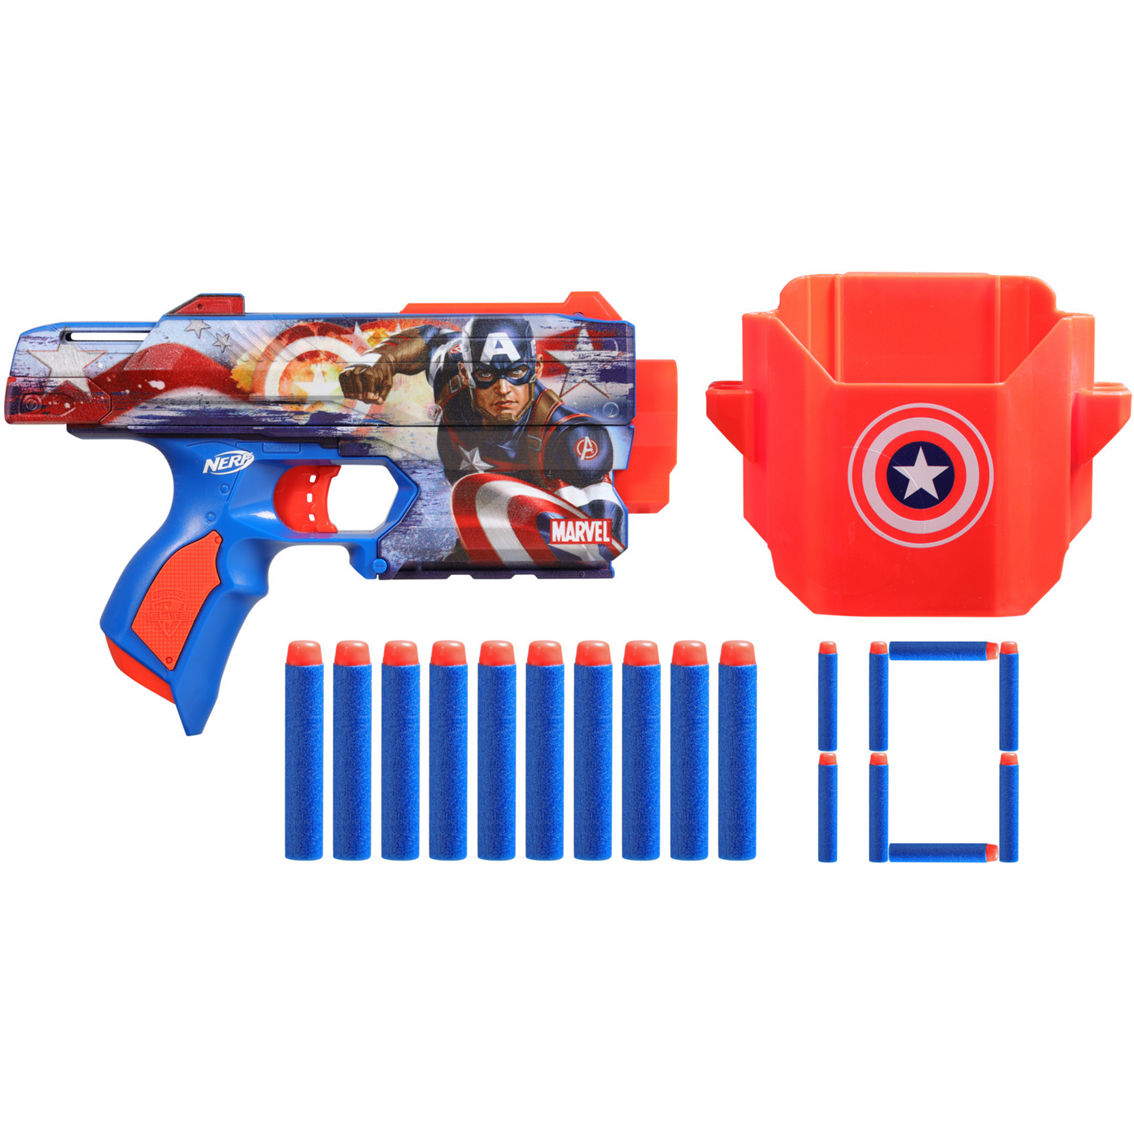 Nerf Marvel Captain America Blaster - Image 2 of 3